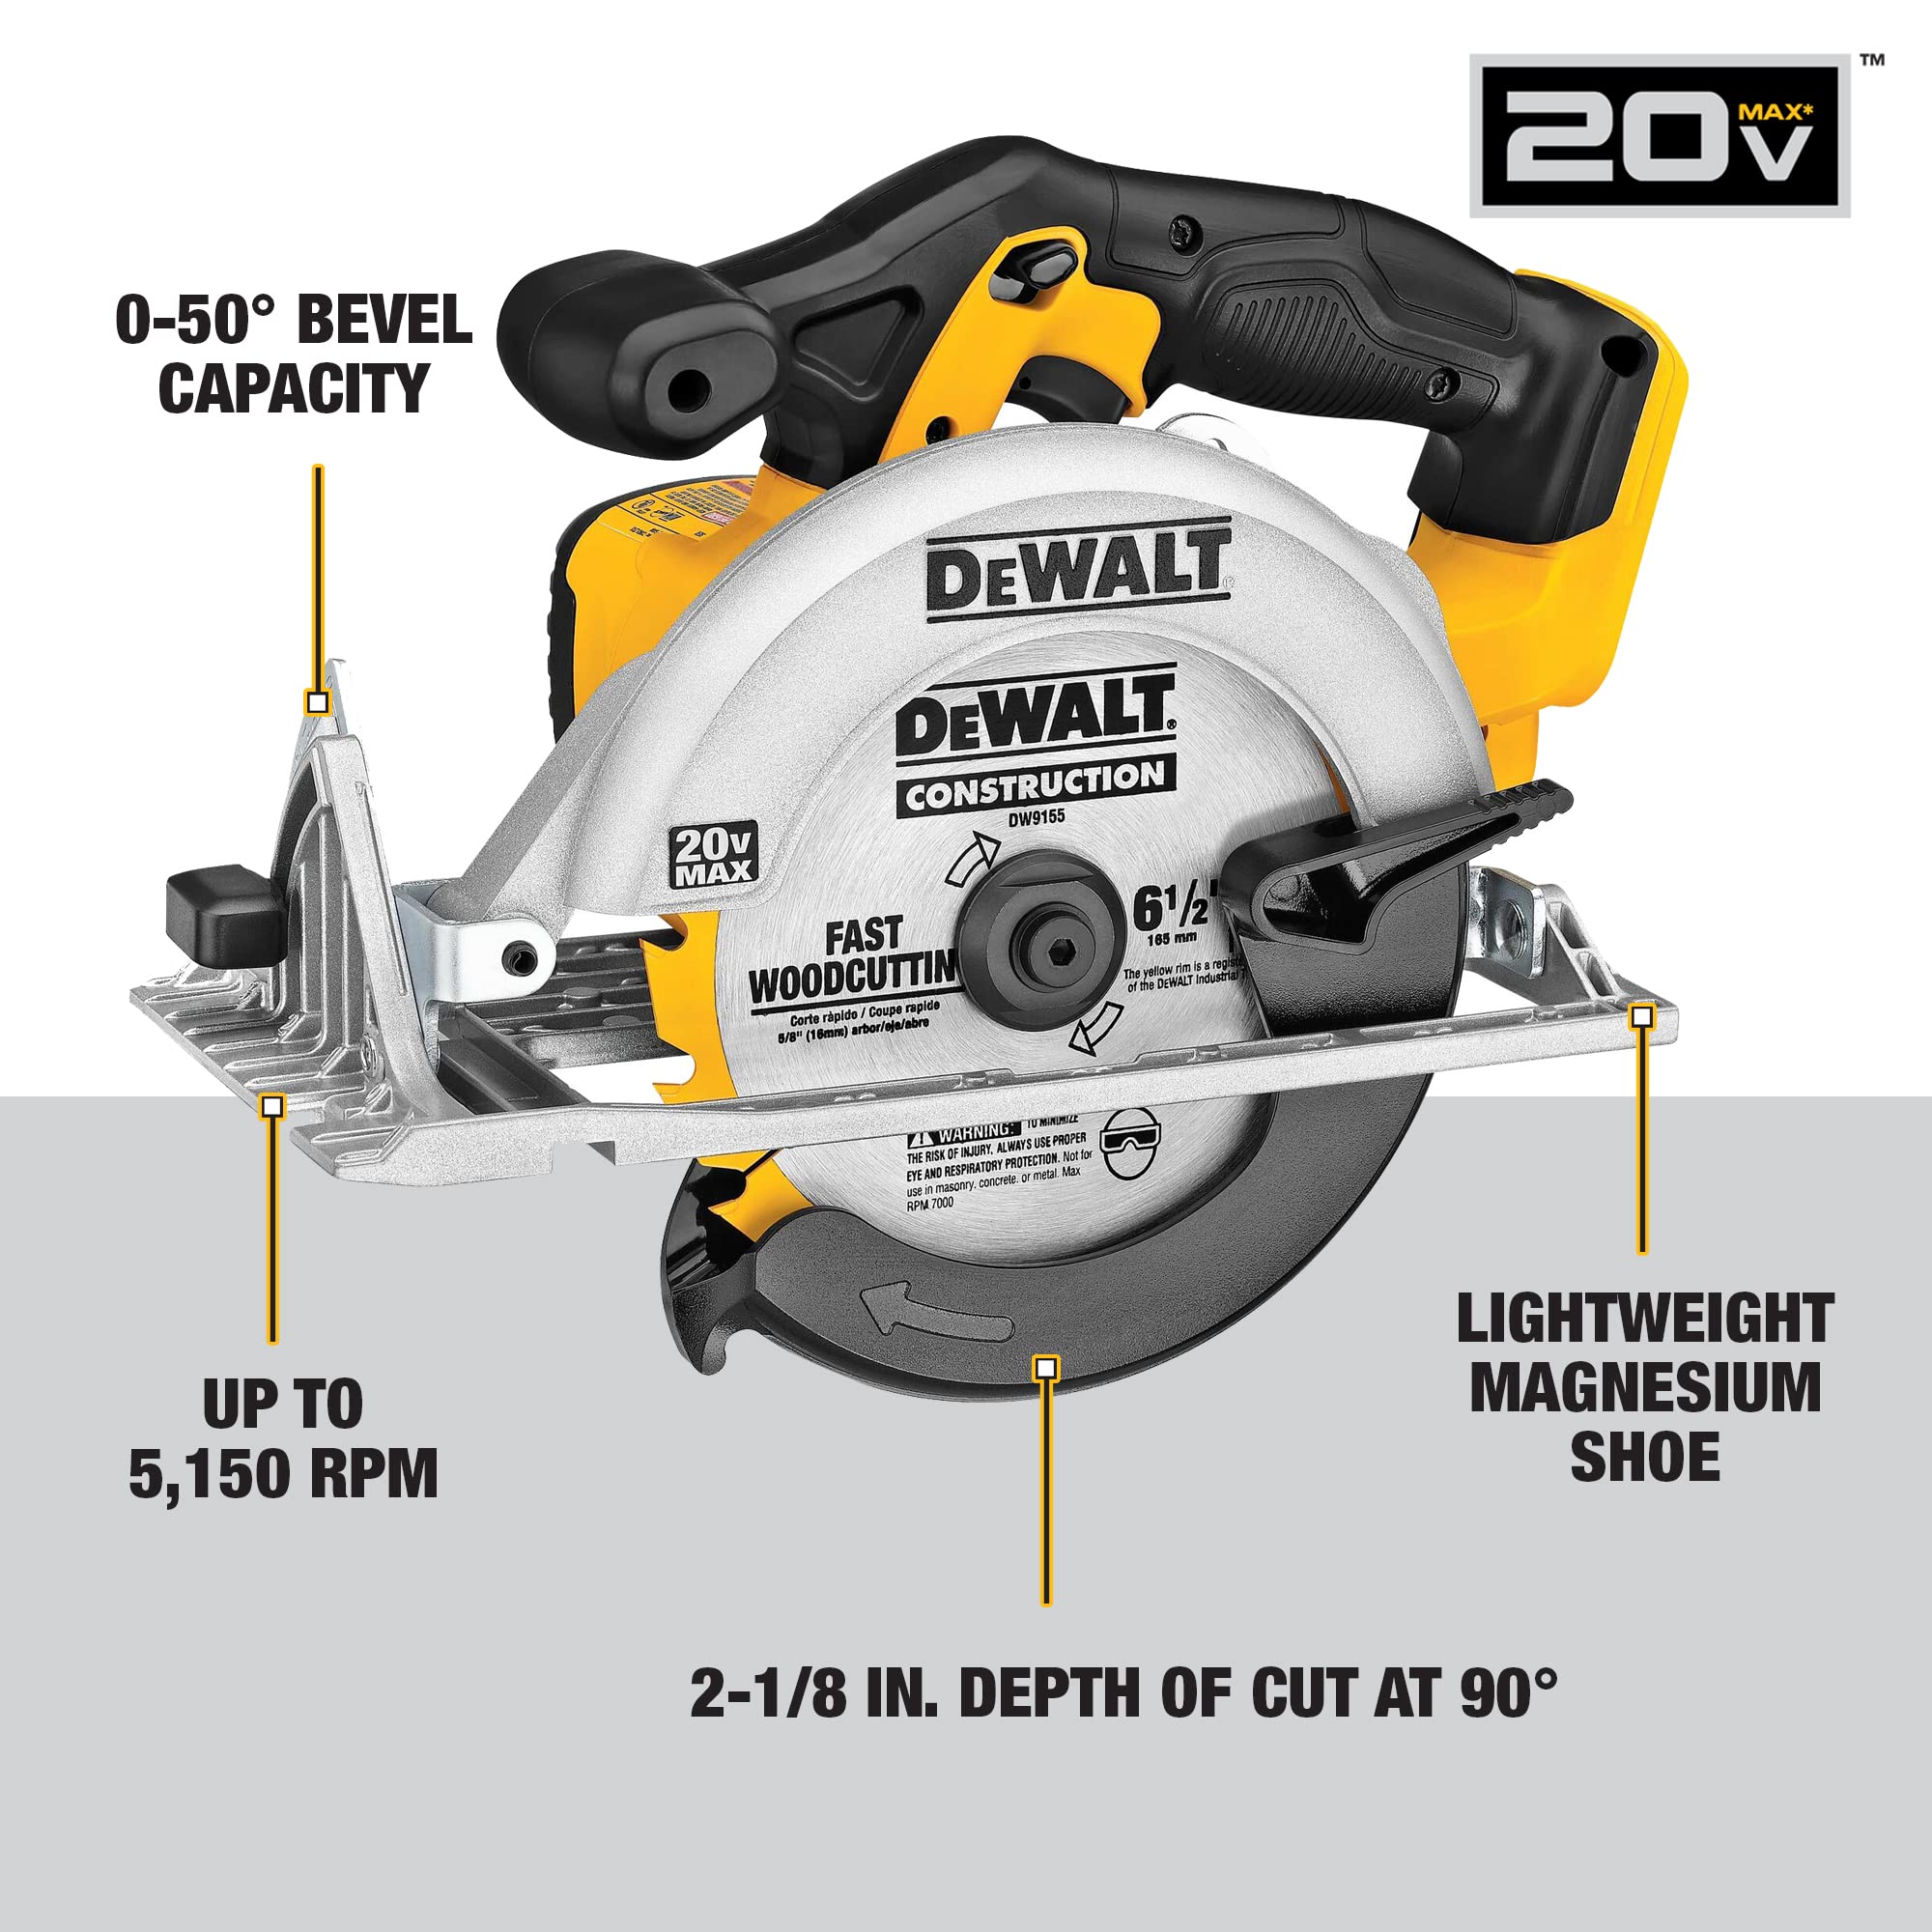 DEWALT 20V MAX Cordless Drill Combo Kit, 5-Tool (DCK592L2) , Yellow